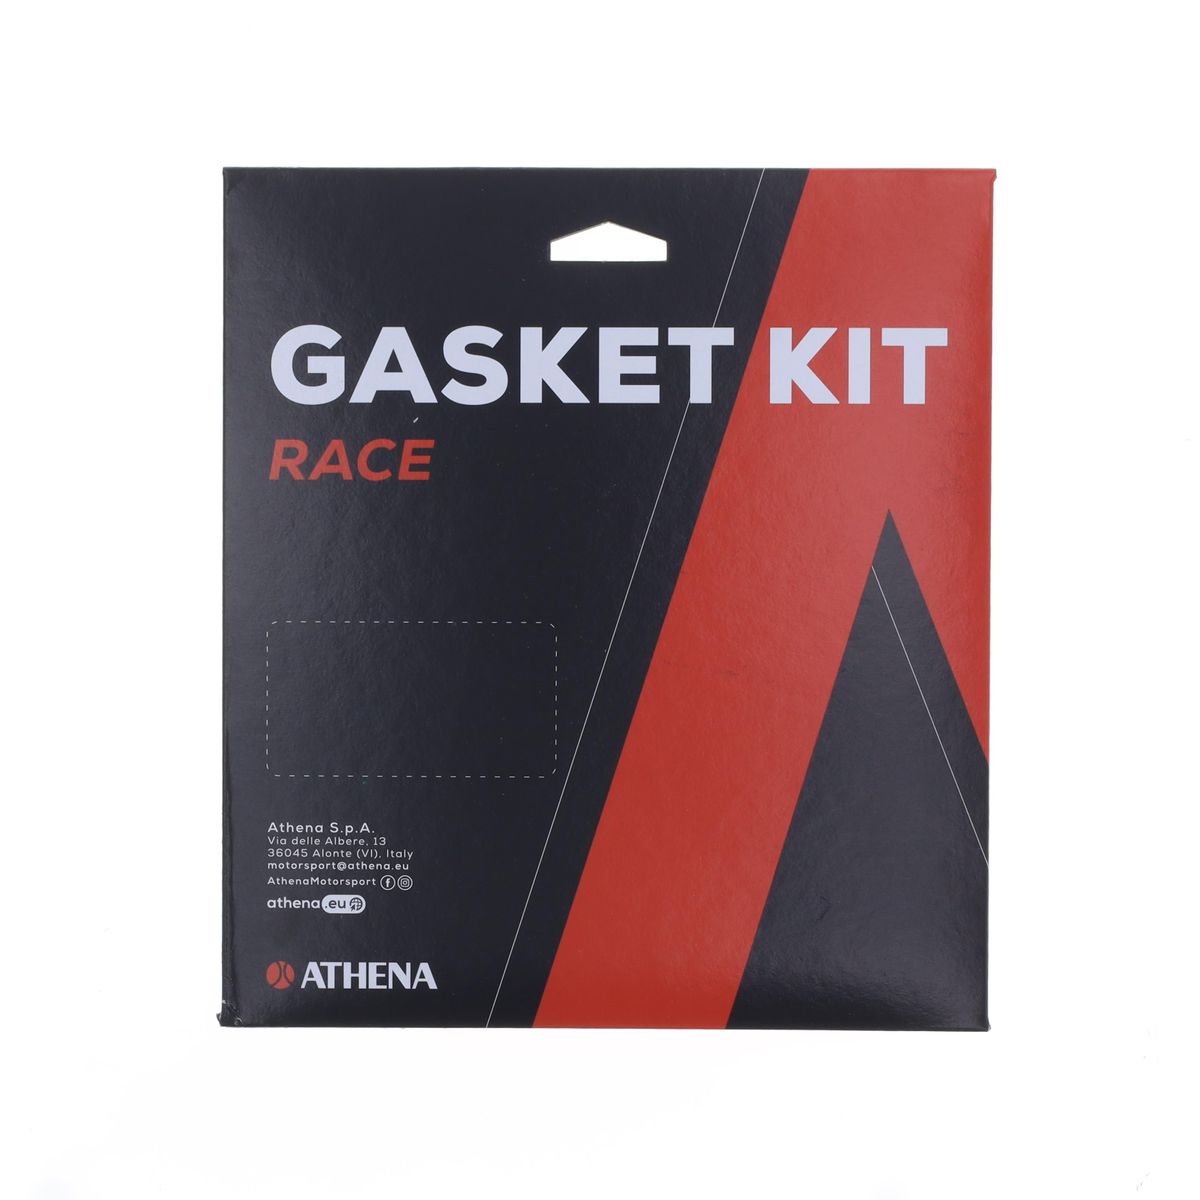 Obrázek produktu Race gasket kit ATHENA R4856-213